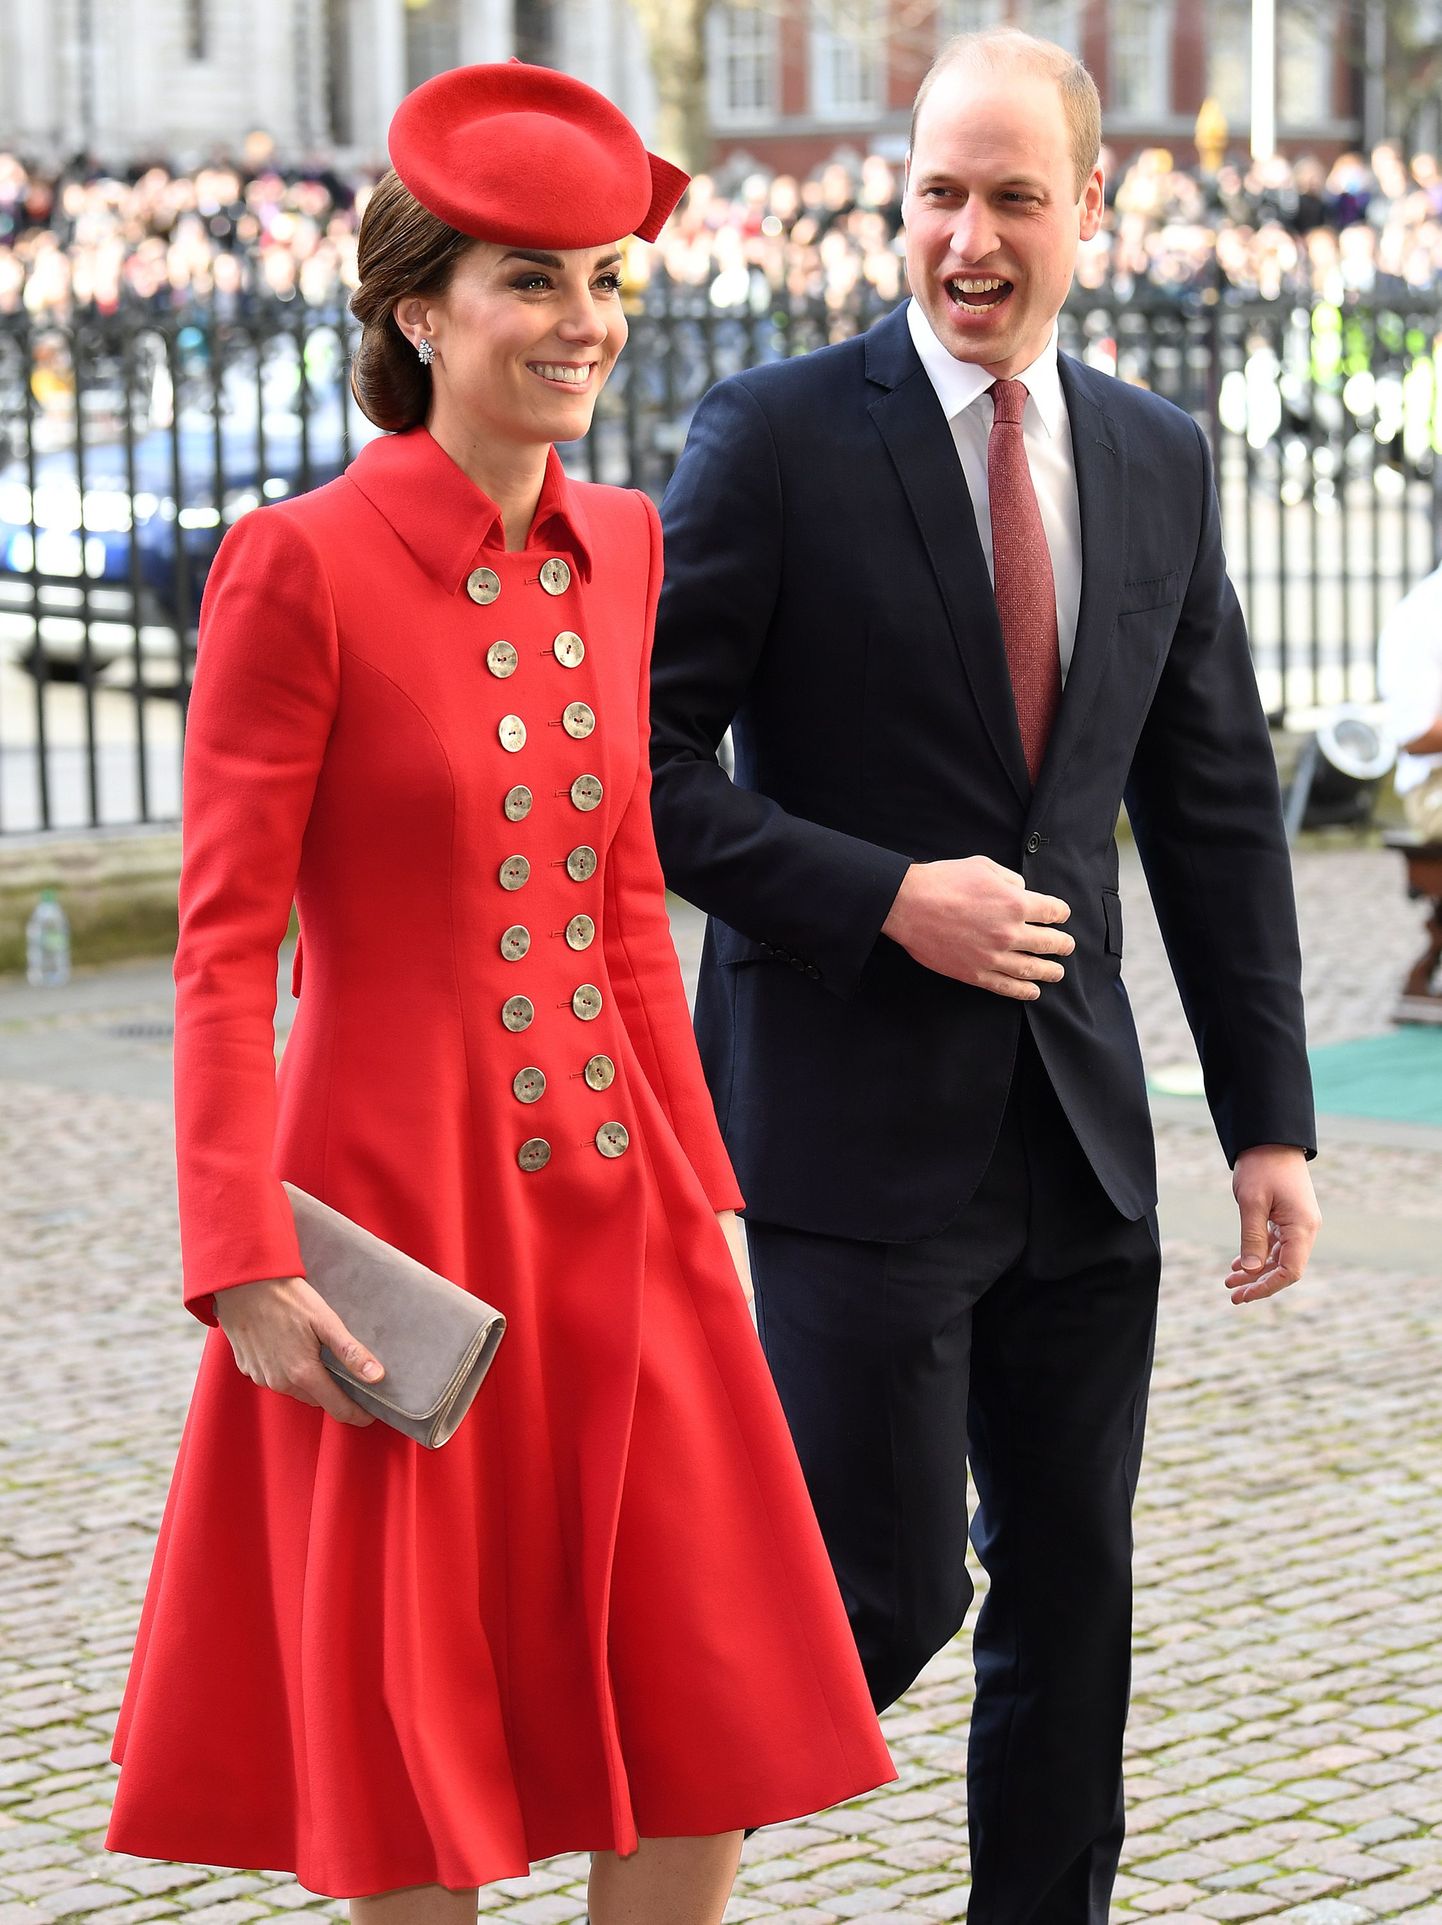 Prints William ja Cambridge'i hertsoginna Catherine 11. märtsil 2019 suundumas rahvaste ühenduse jumalateenistusele Westminster Abbeysse